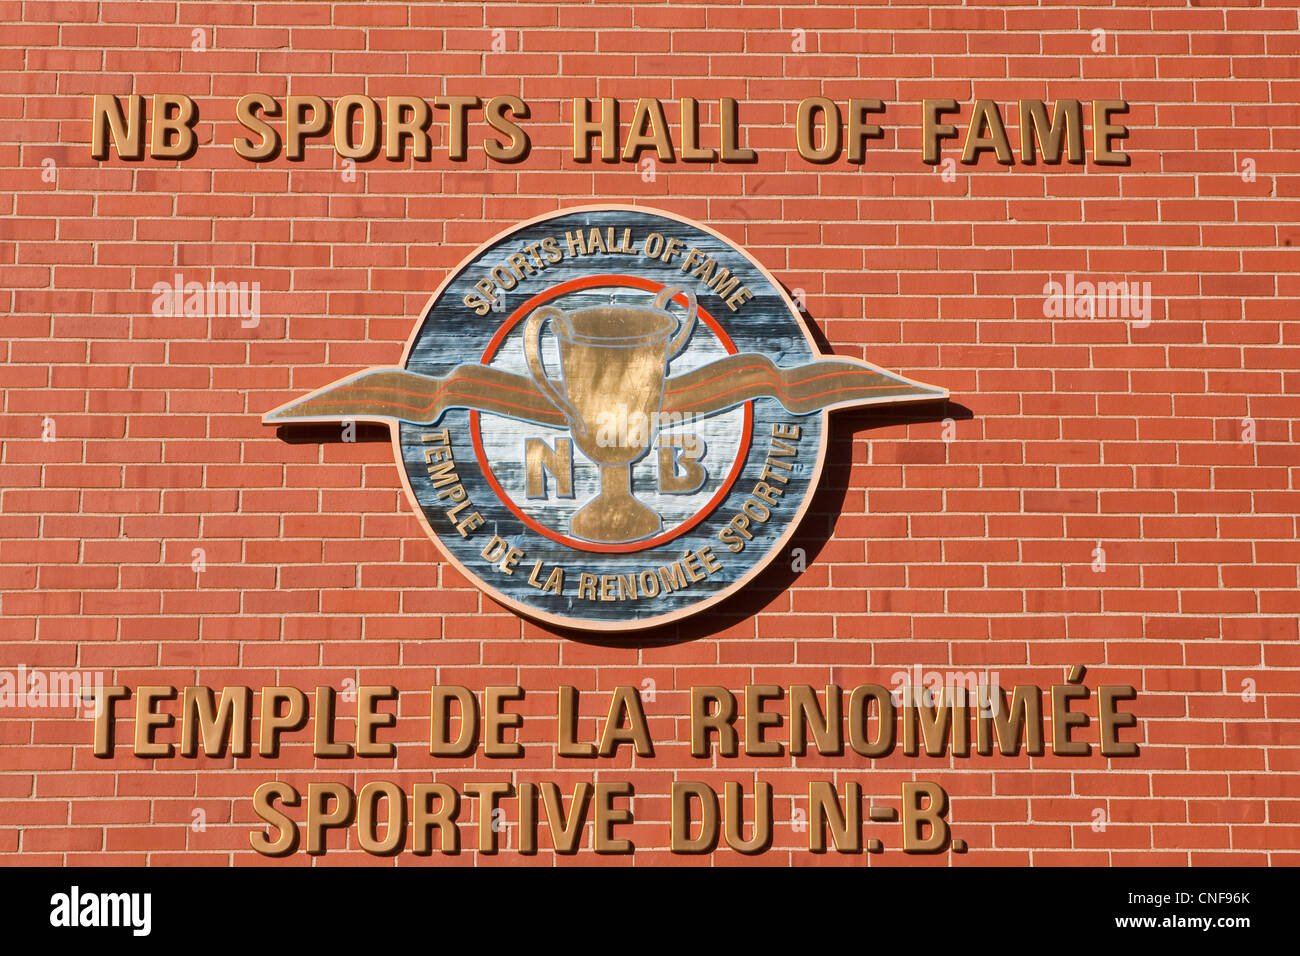 New Brunswick Sports Hall of Fame Stock Photo